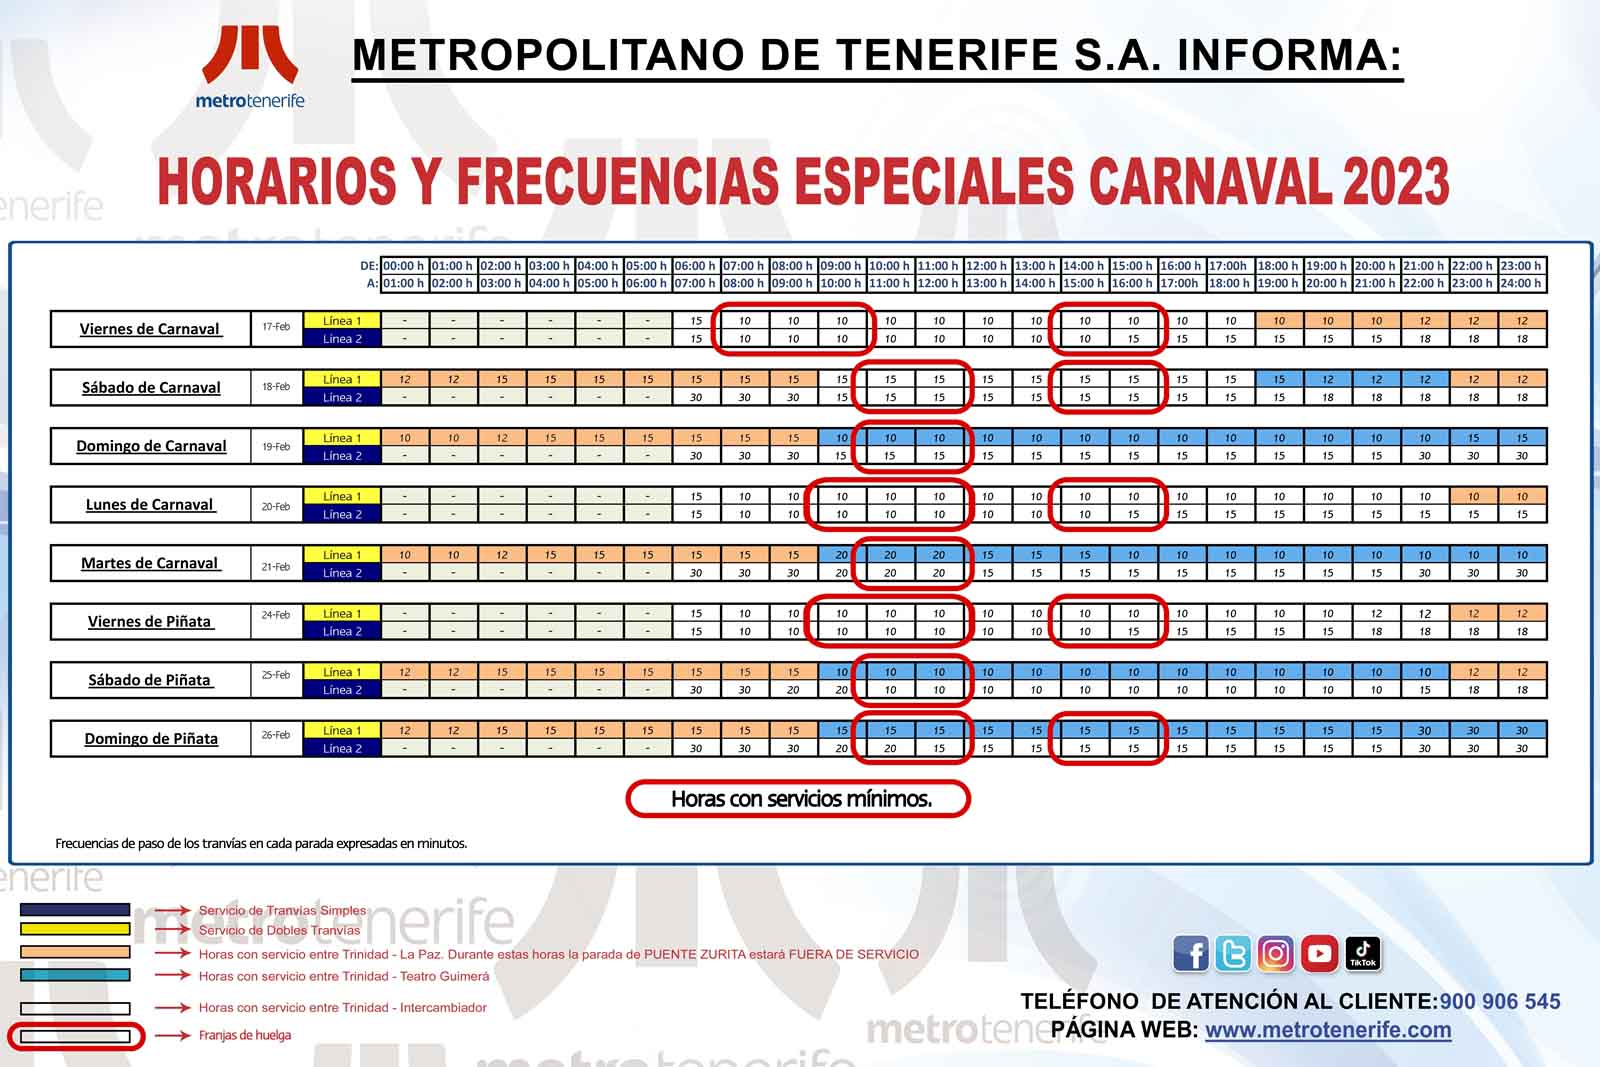 El Tranvía operará en Carnavales con servicios mínimos del 90% y 75% por la huelga